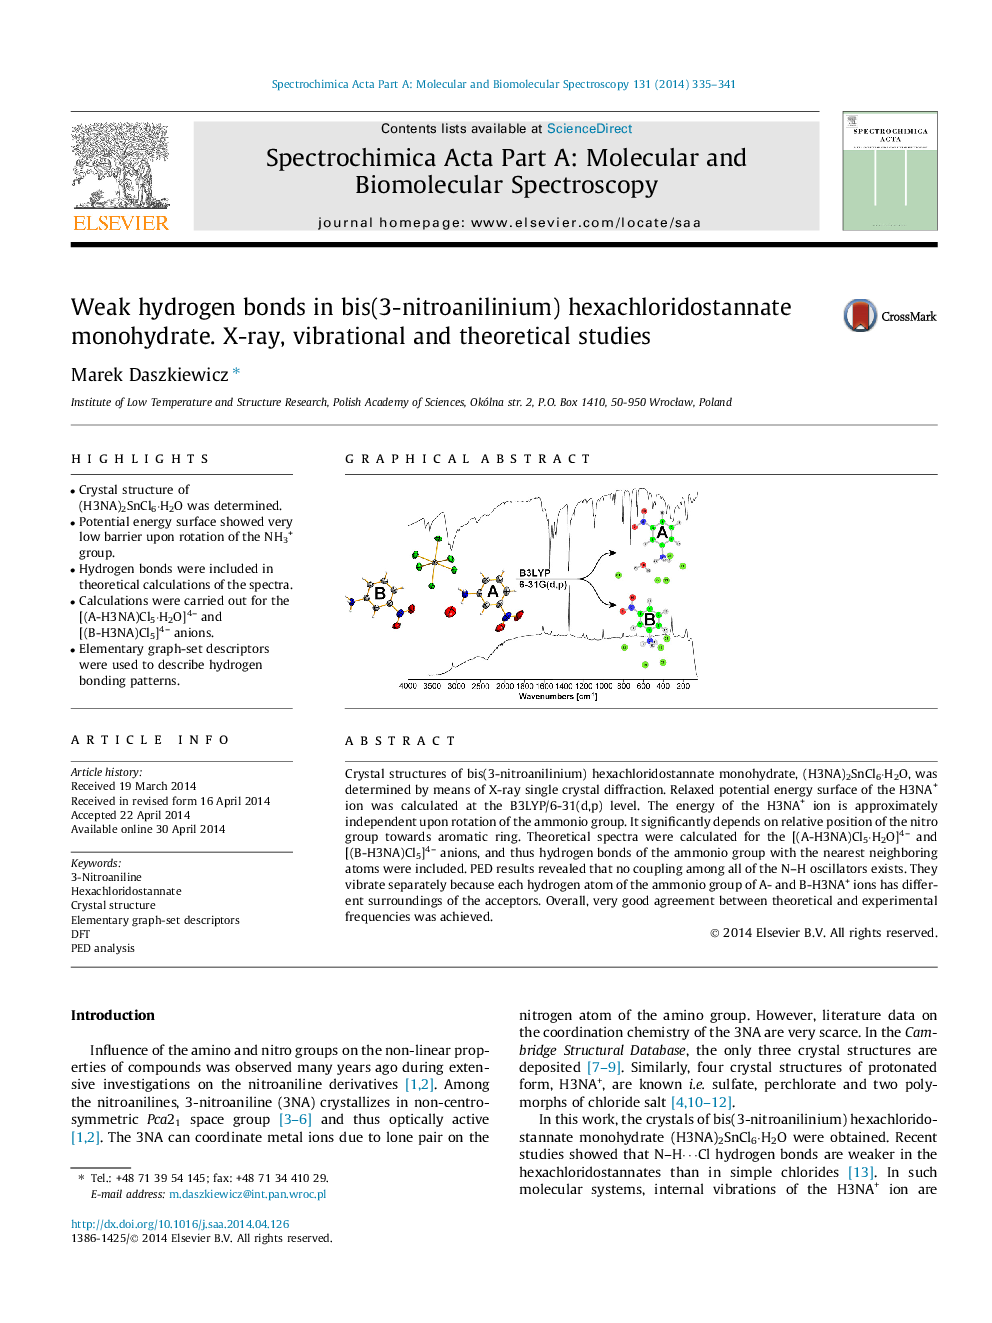 پیوندهای هیدروژنی ضعیف در متیل هگزا کلریدوستنات مونو هیدرات بیس (3-نیتروآنیلینیم). اشعه ایکس، مطالعات ارتعاشی و نظری 